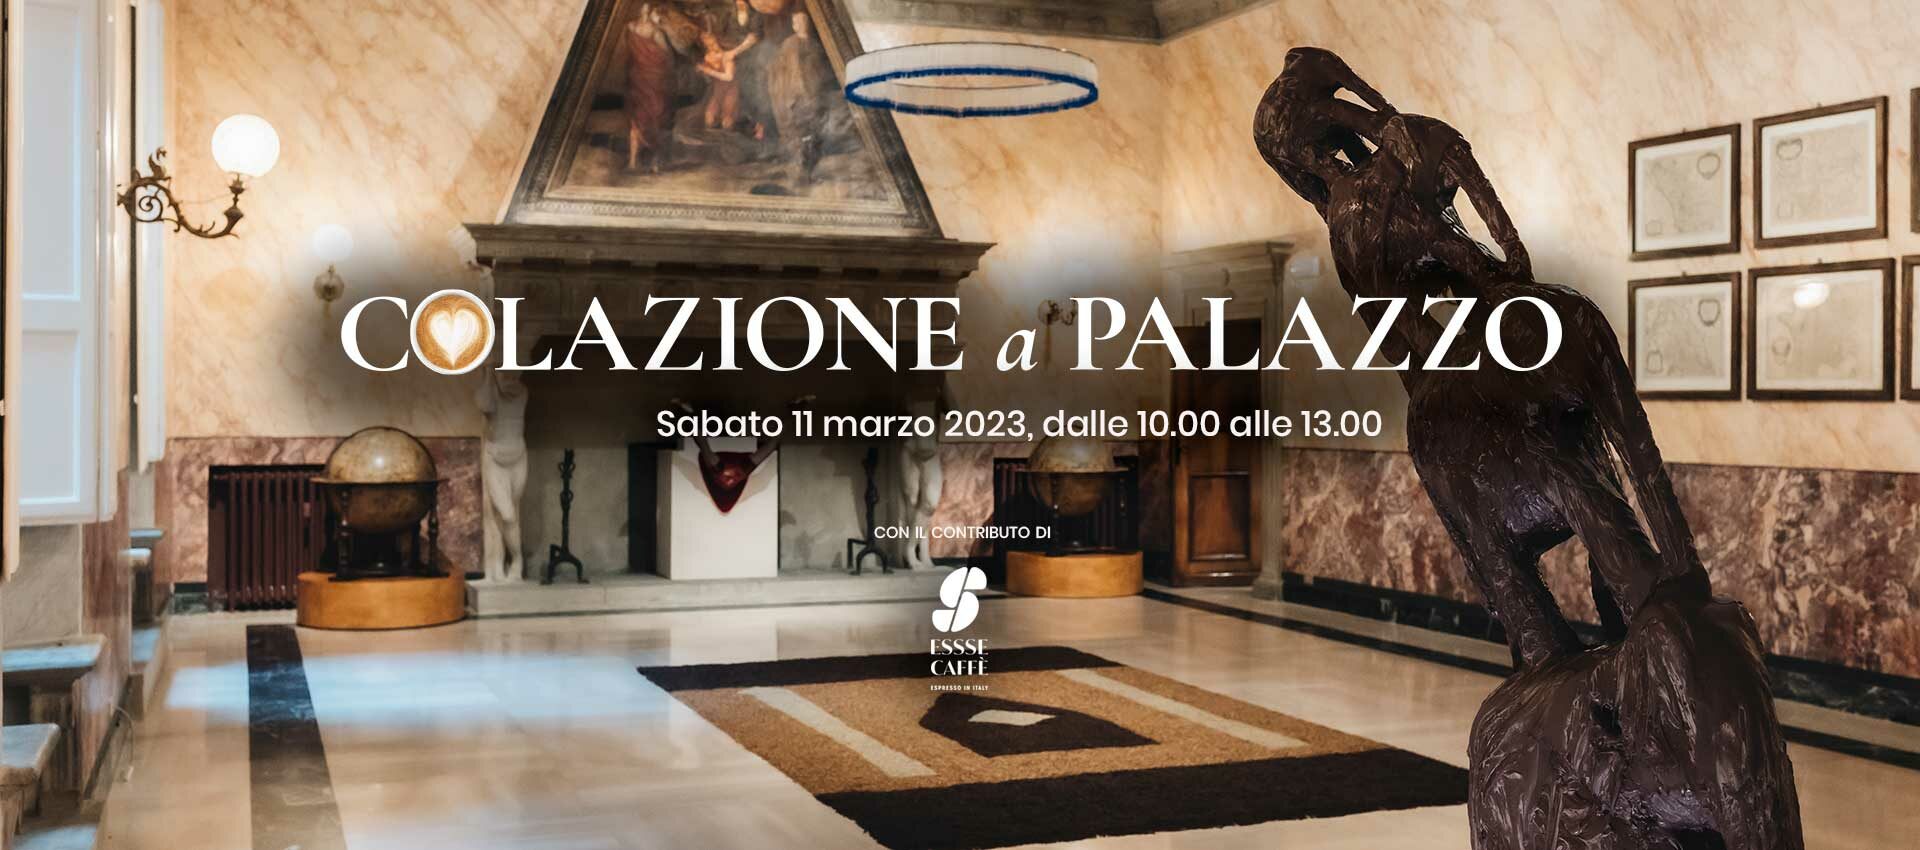 <p>Sabato 11 marzo 2023, dalle 10.00 alle 13.00</p>
<h2>Colazione a Palazzo</h2>
<h3>Vieni ad assaggiare la mostra di Aldo Mondino </h3>
